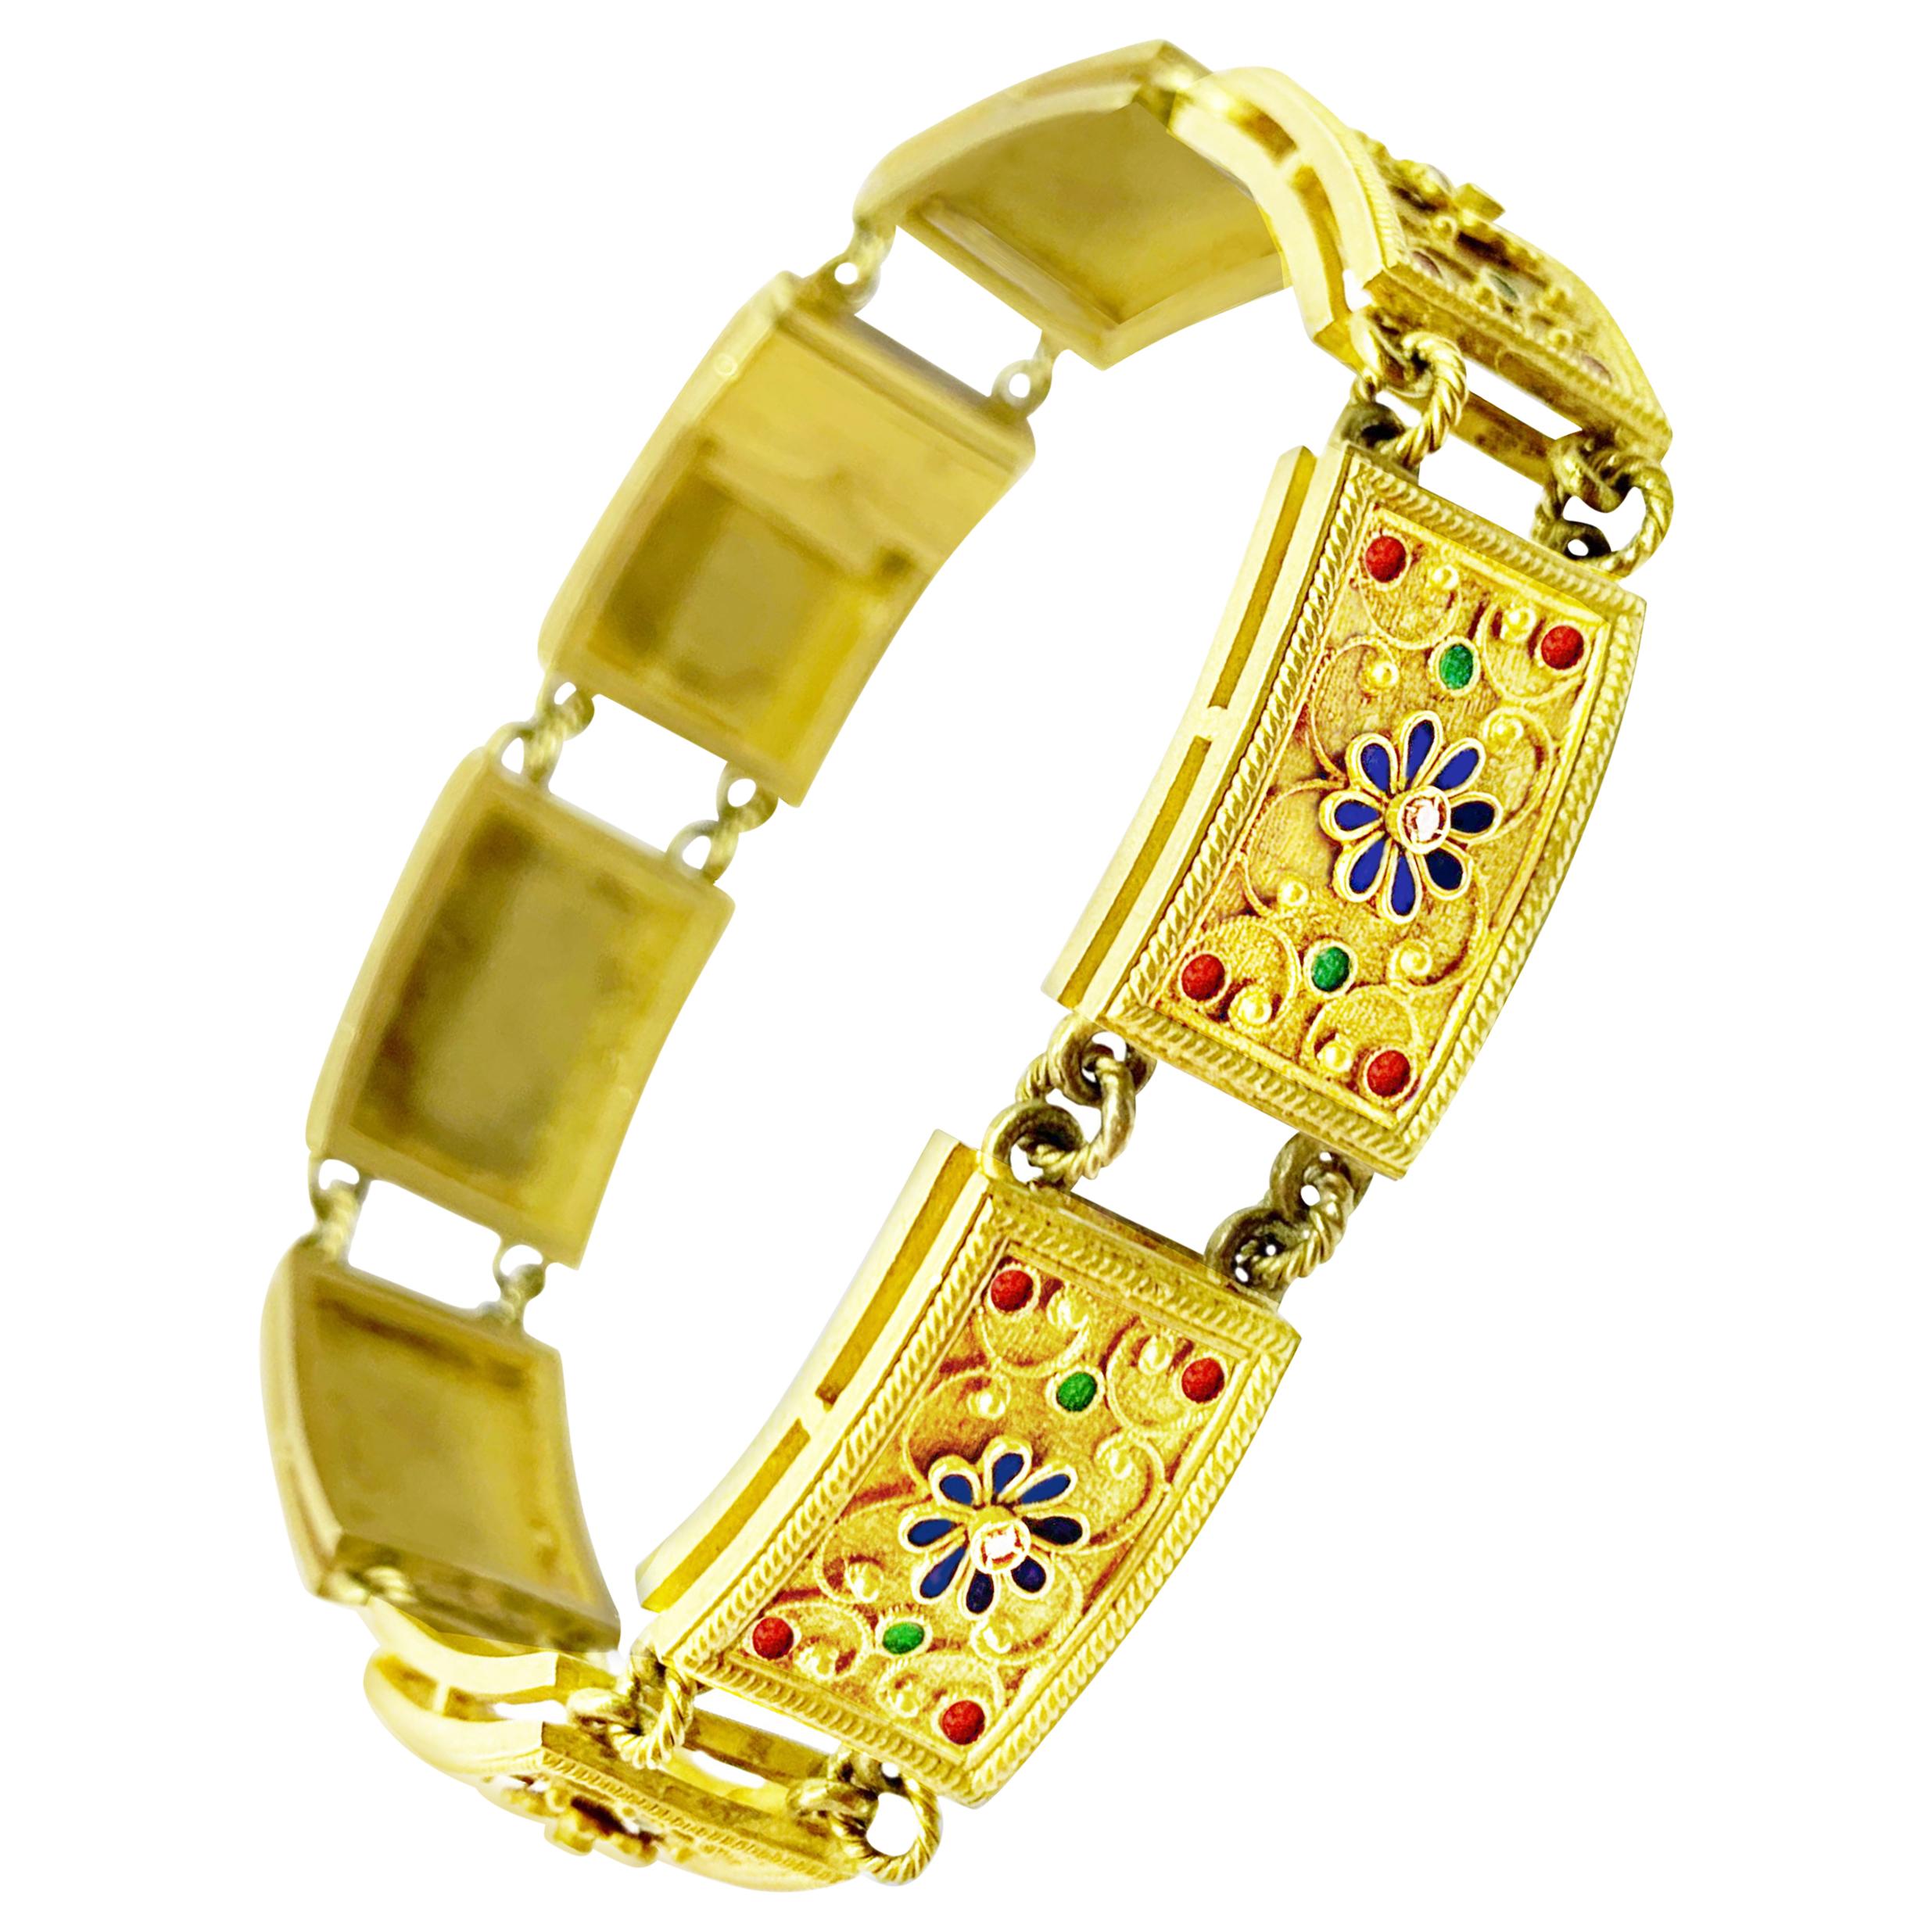 Armband aus 18 Karat Gold mit Diamanten und polychromen Emaillen